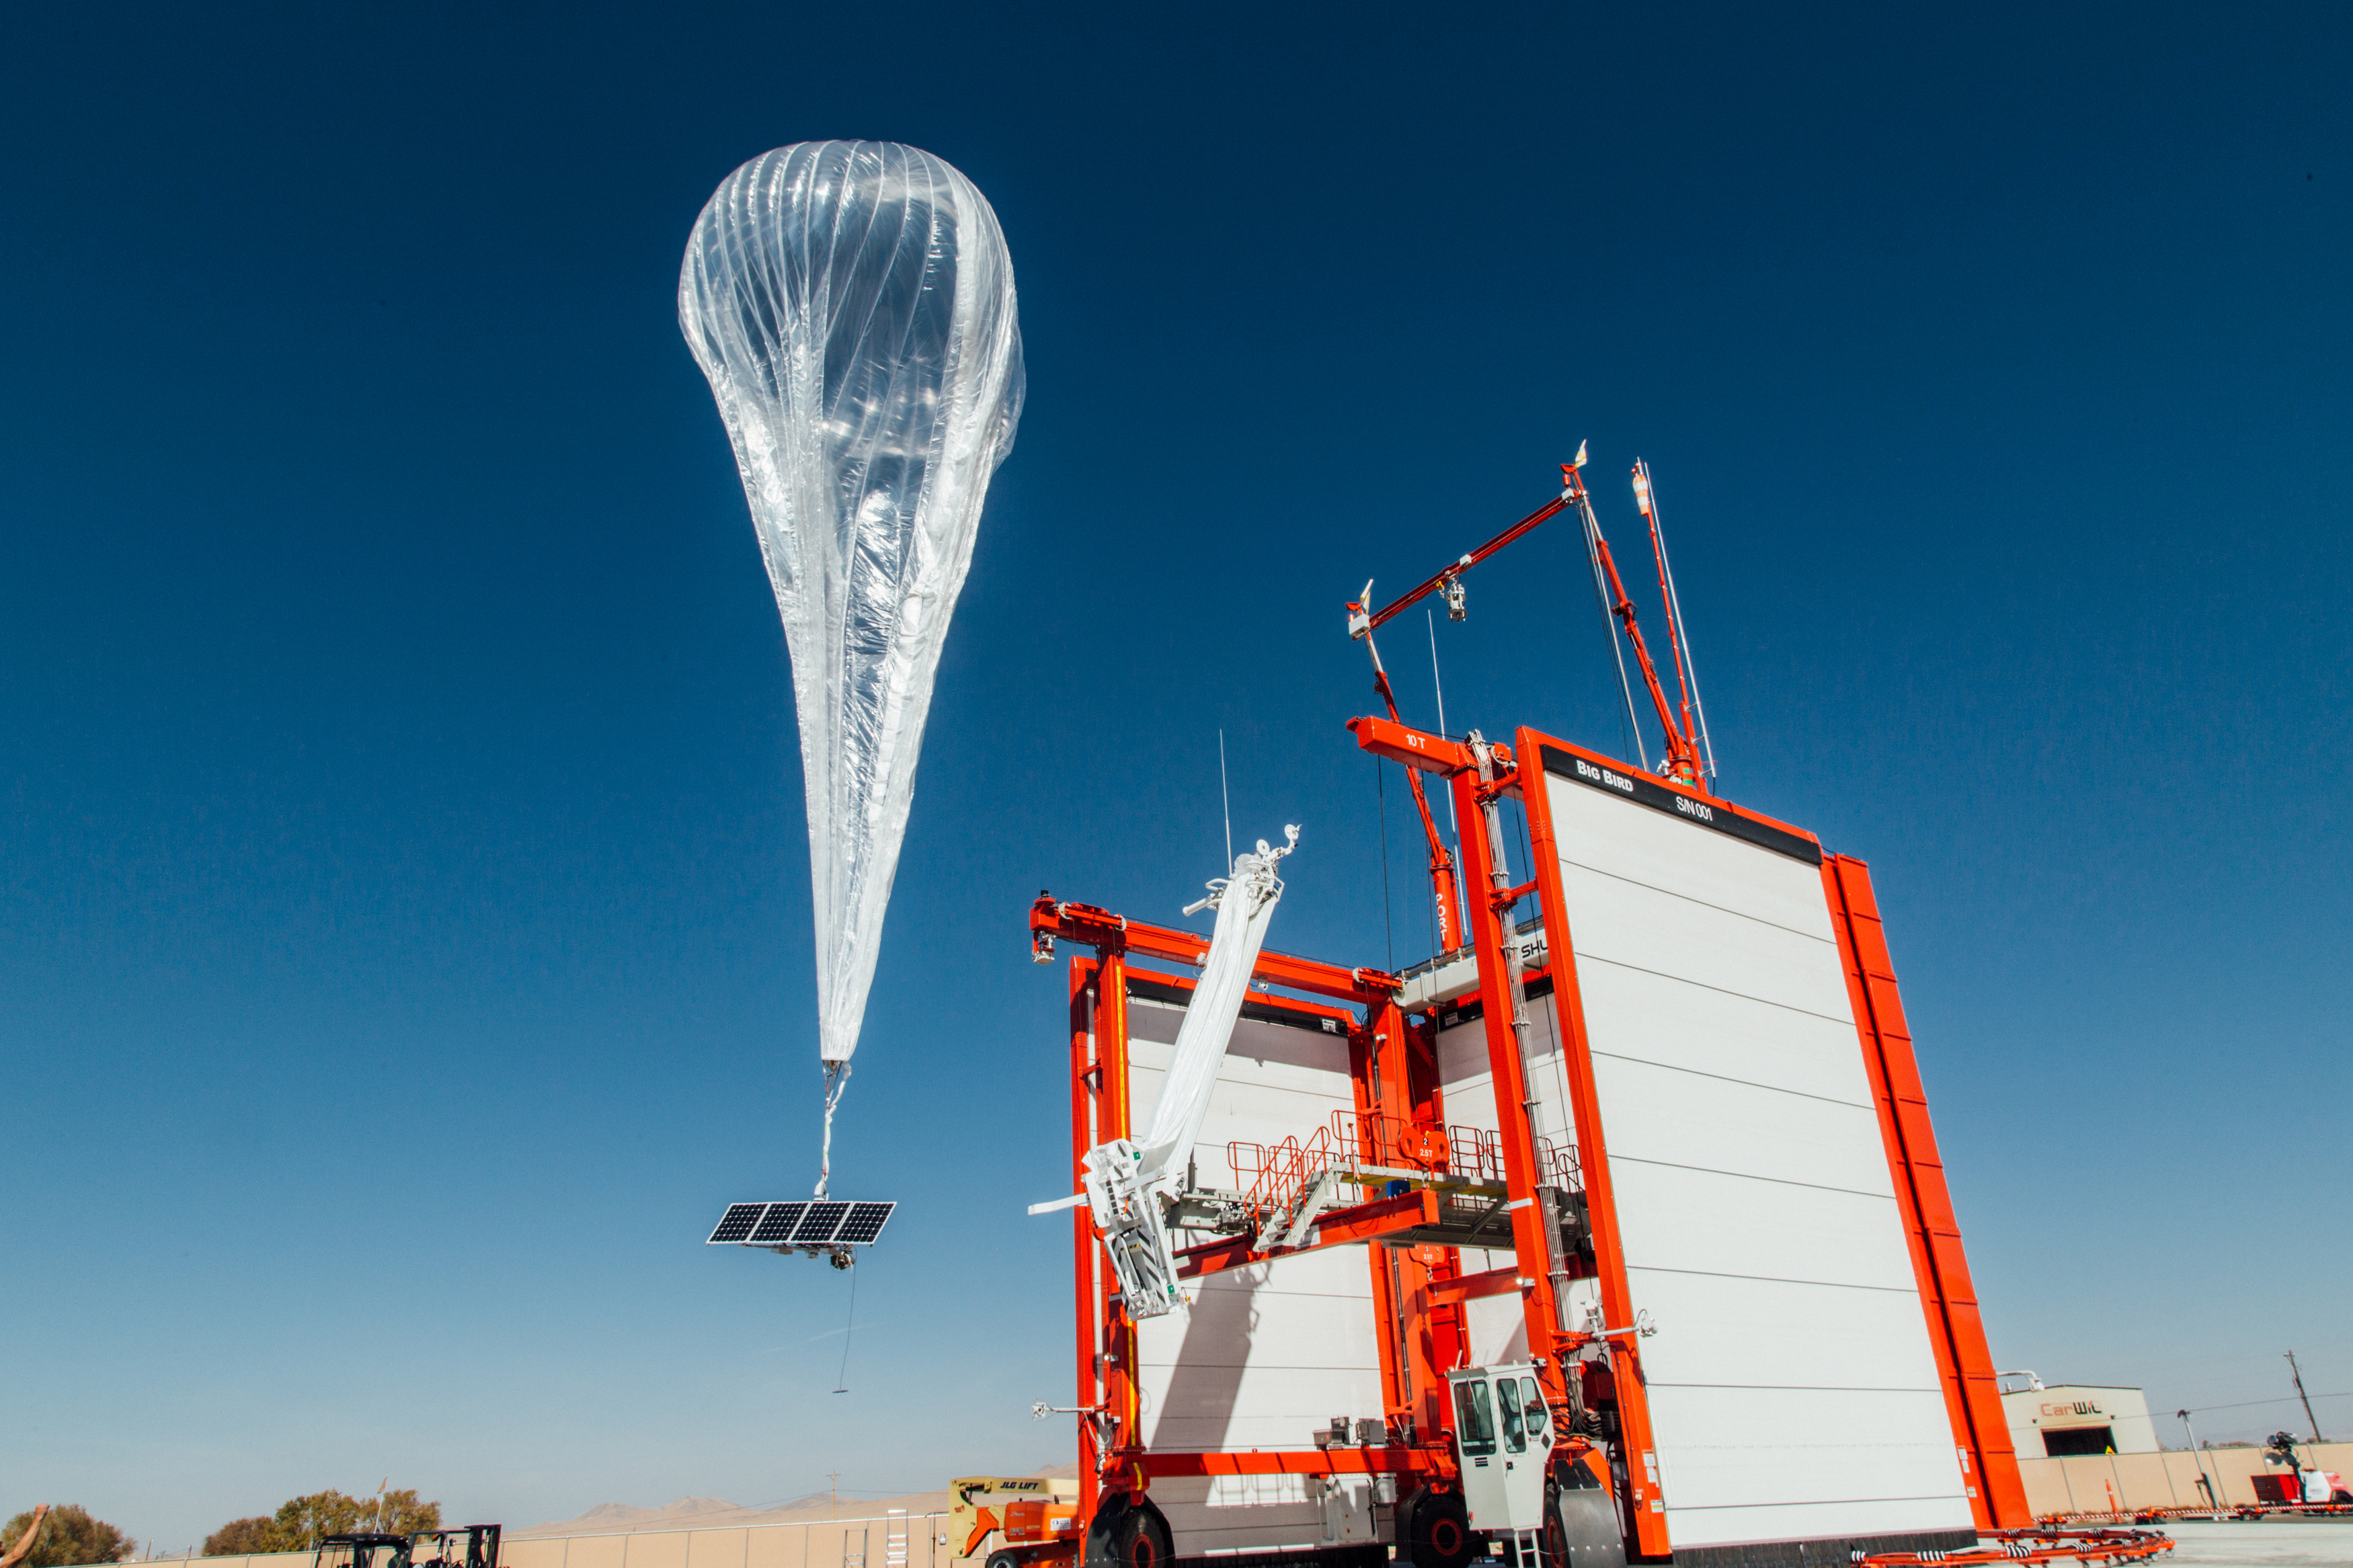 氦氣球升空後將停留在平流層高度，免受風暴及航機影響。（路透圖片）